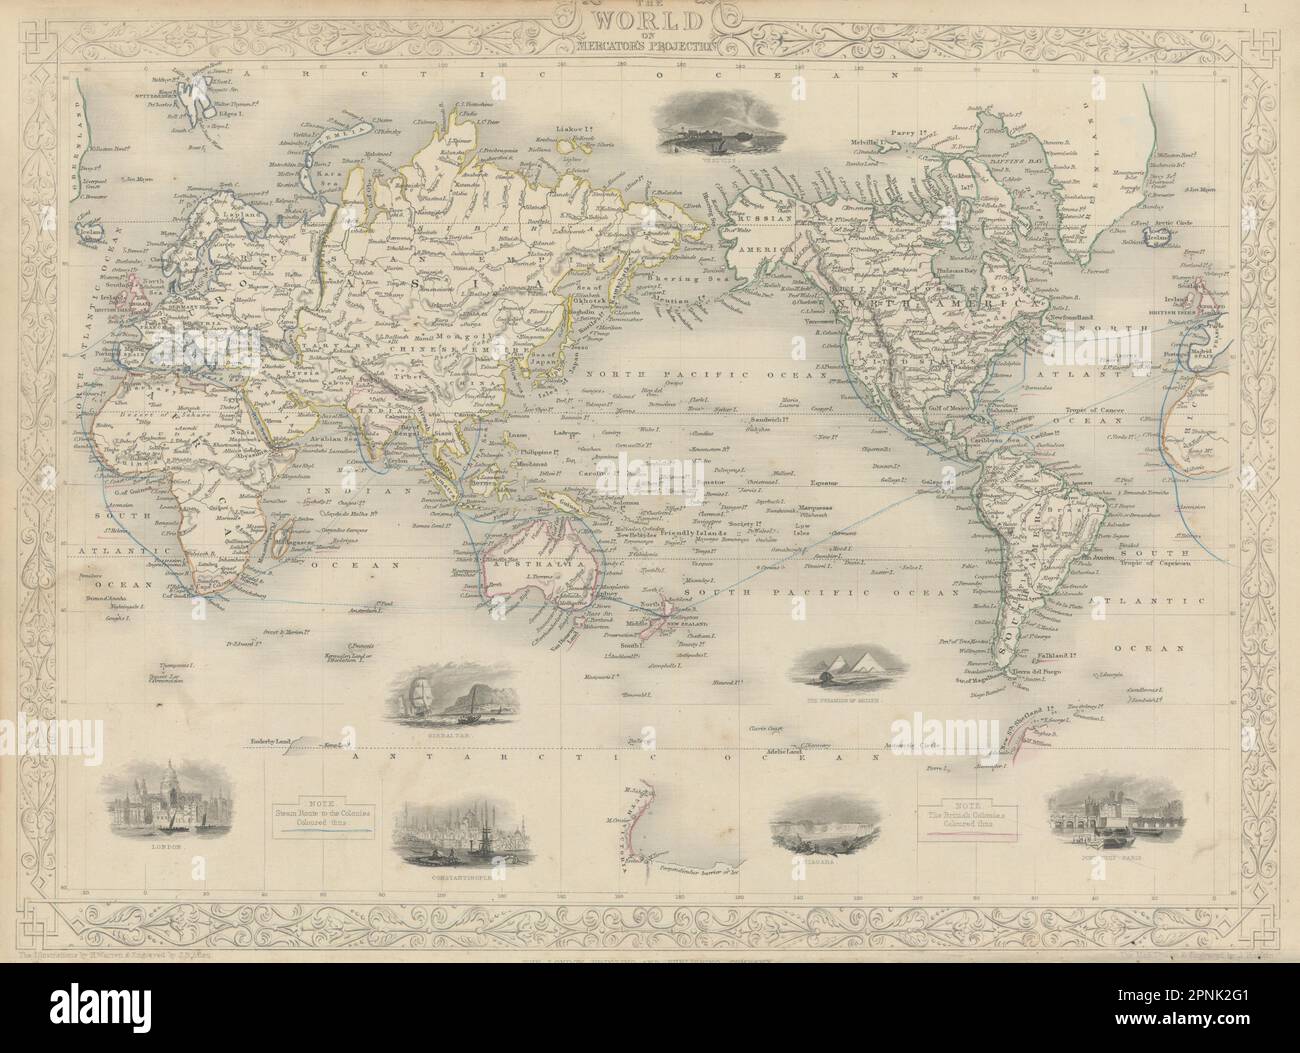 BRITISH EMPIRE. Zeigt Dampf Routen zu den Kolonien. Welt. RAPKIN/TALLIS 1851 Karte Stockfoto